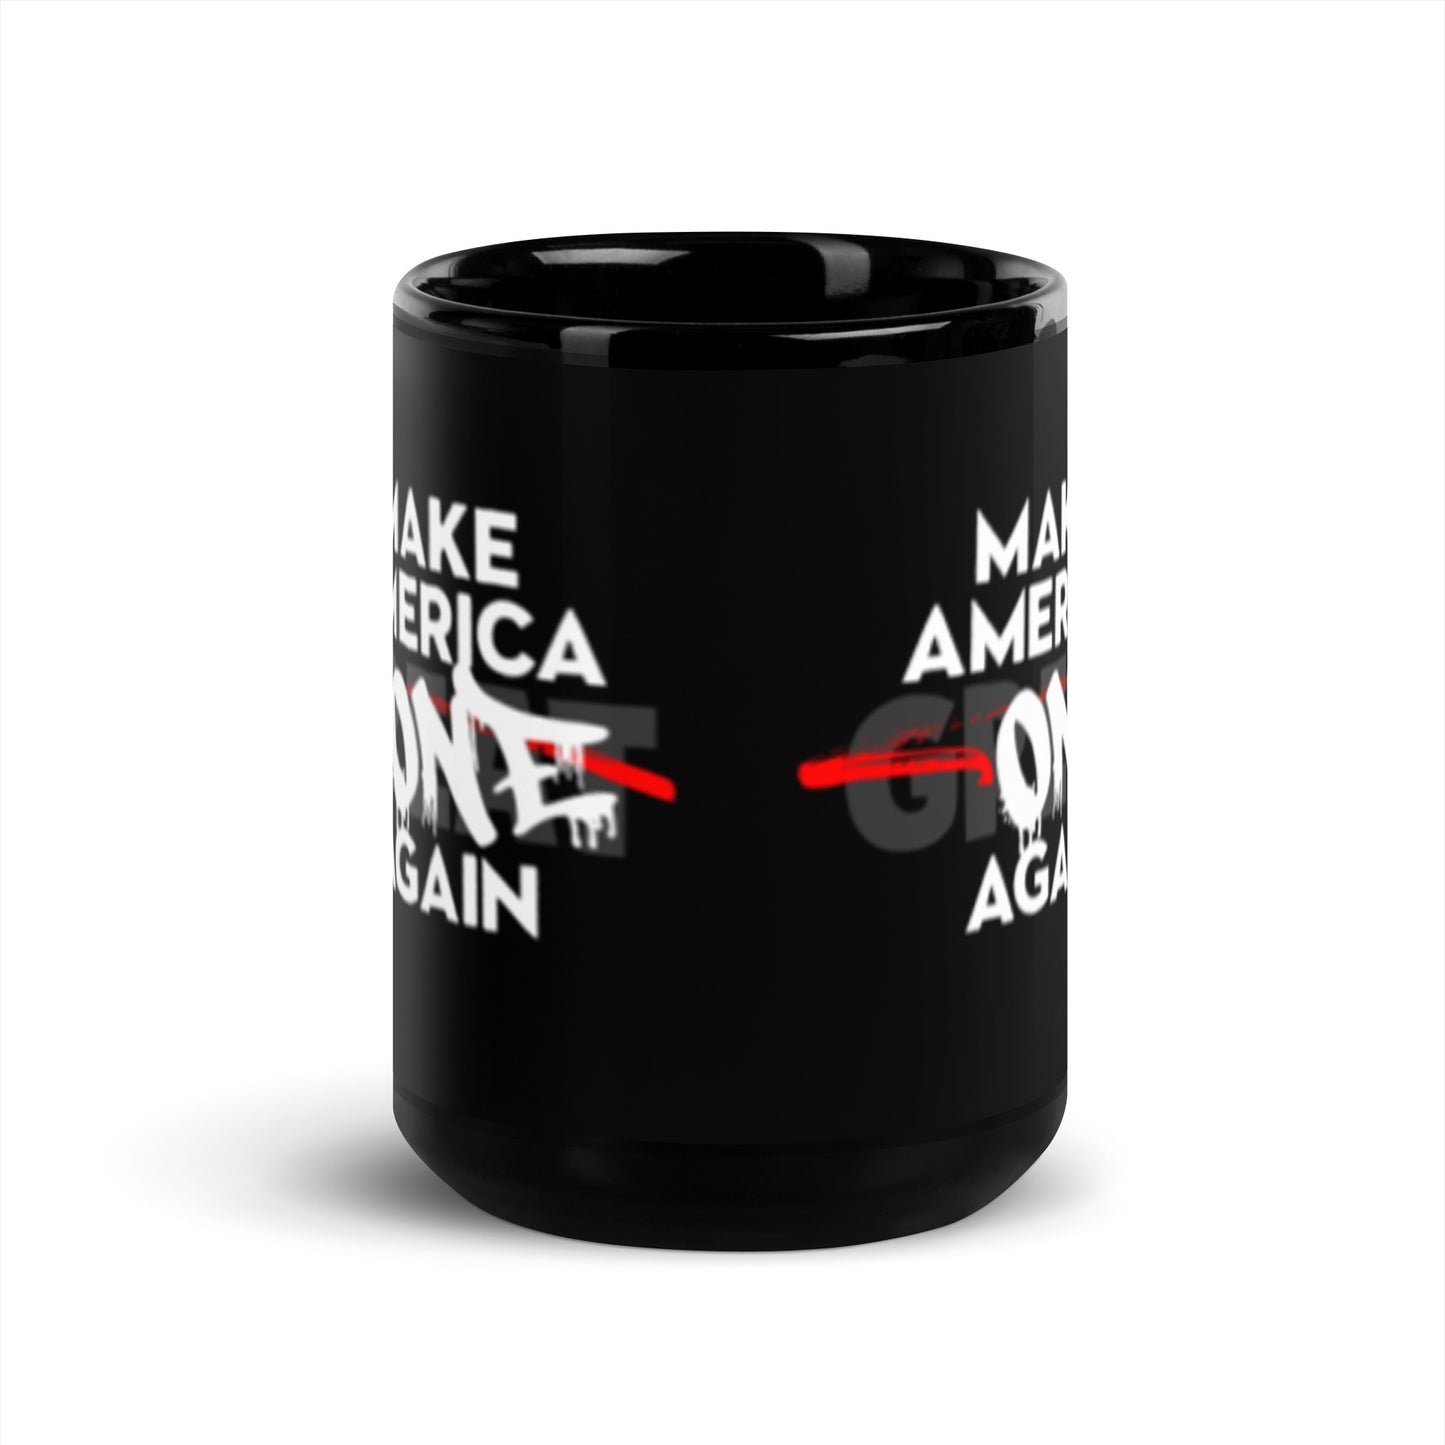 Make America One Again | Mug